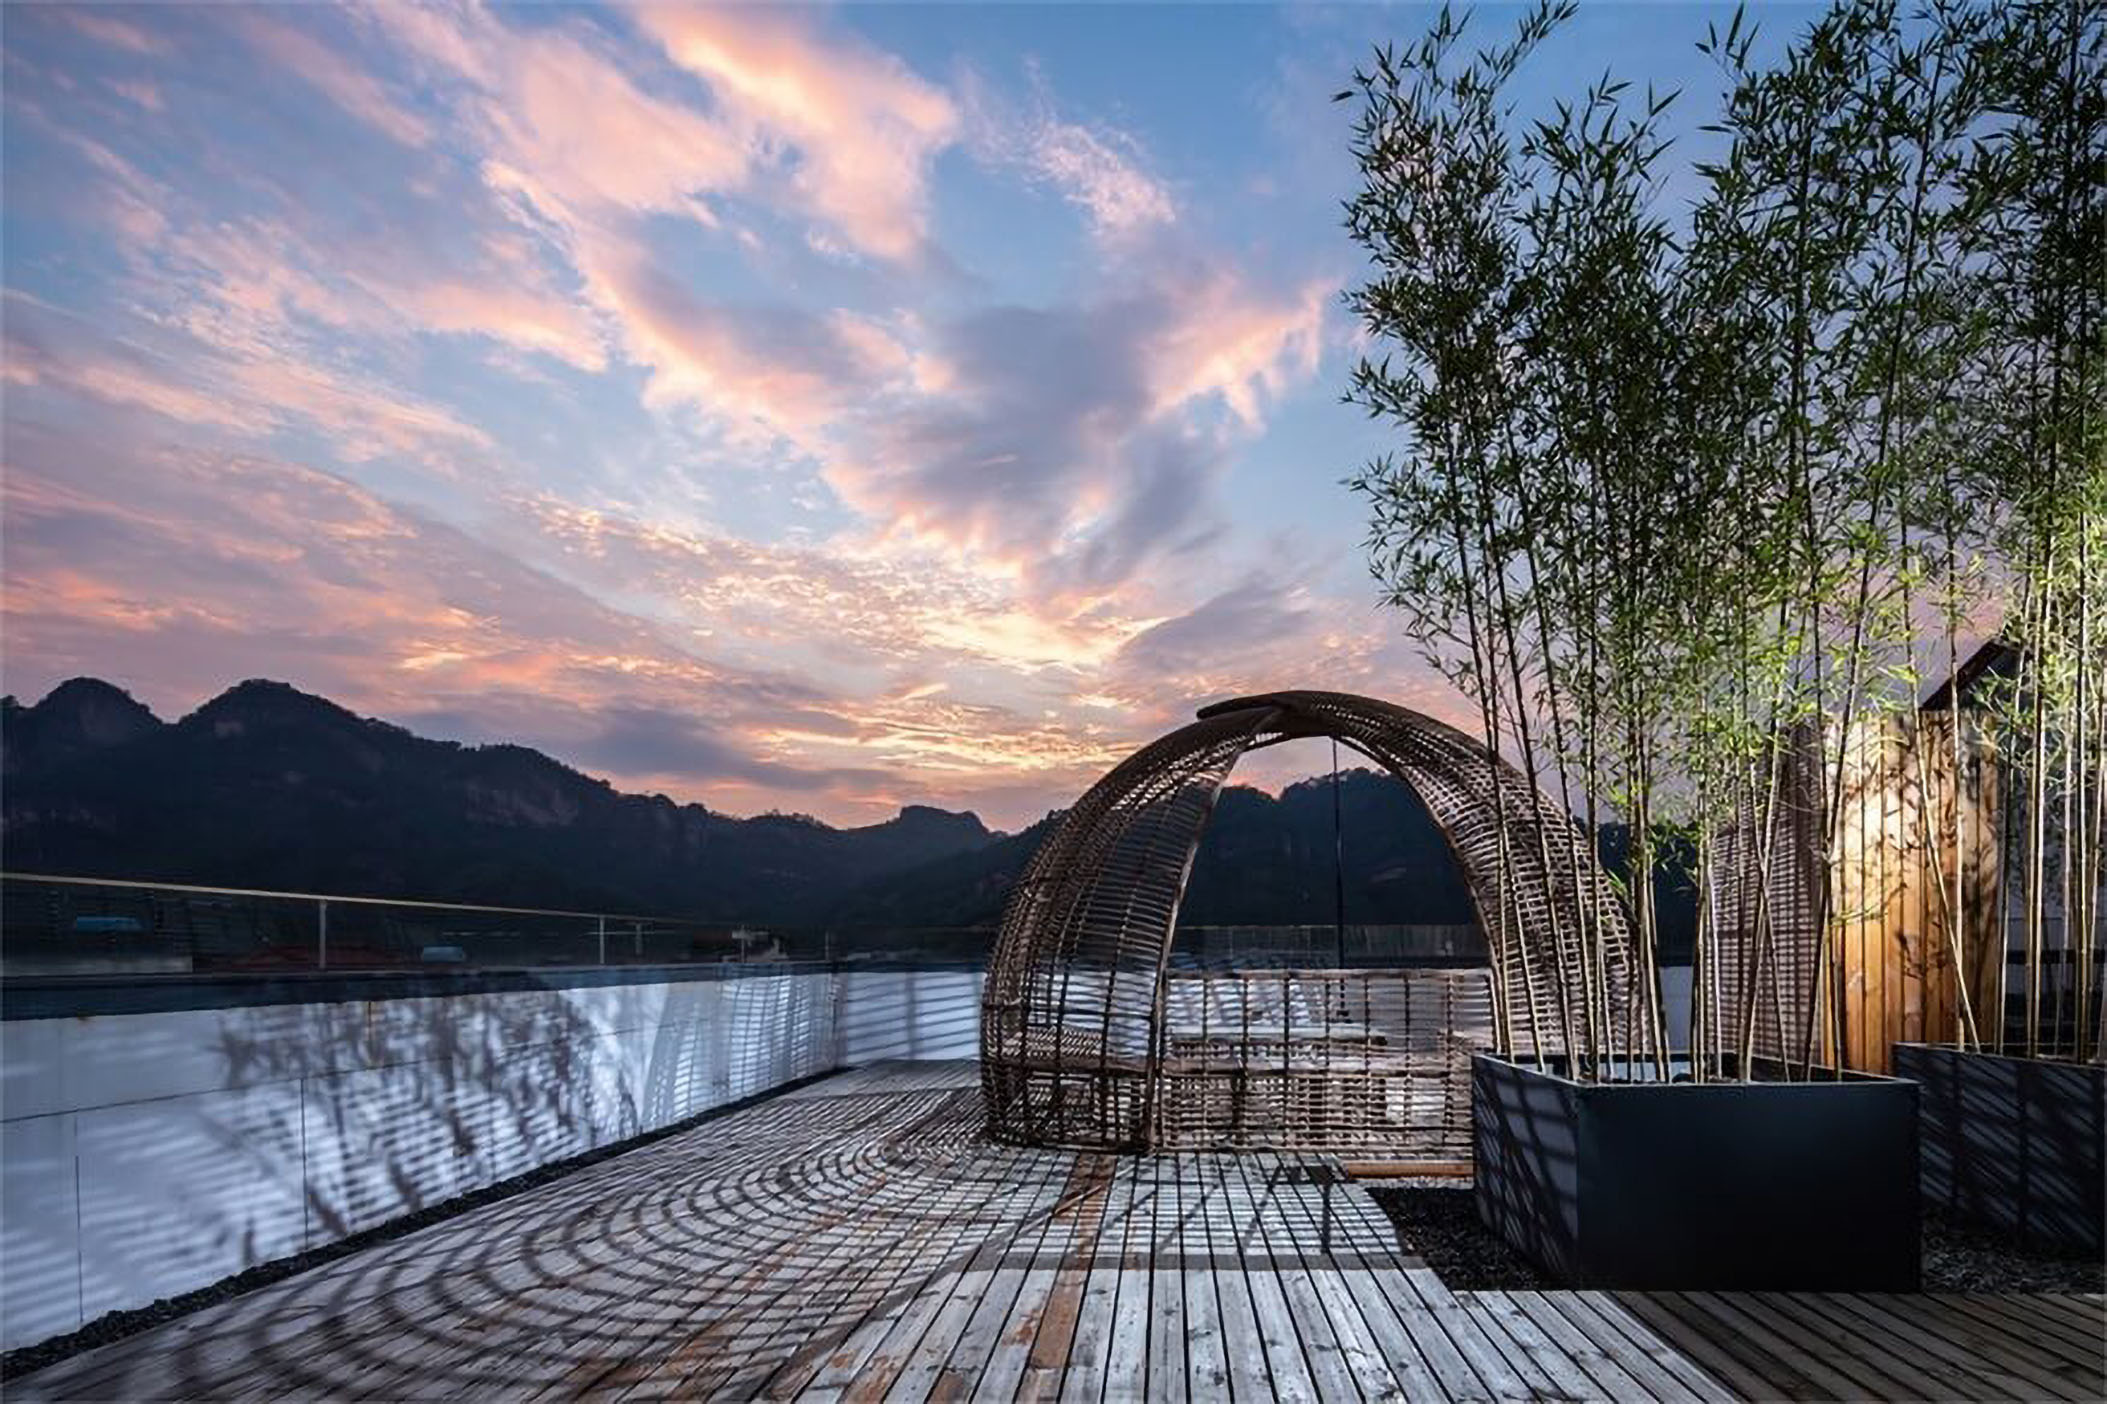 悦武夷·茶生活美学茶主题酒店景观设计